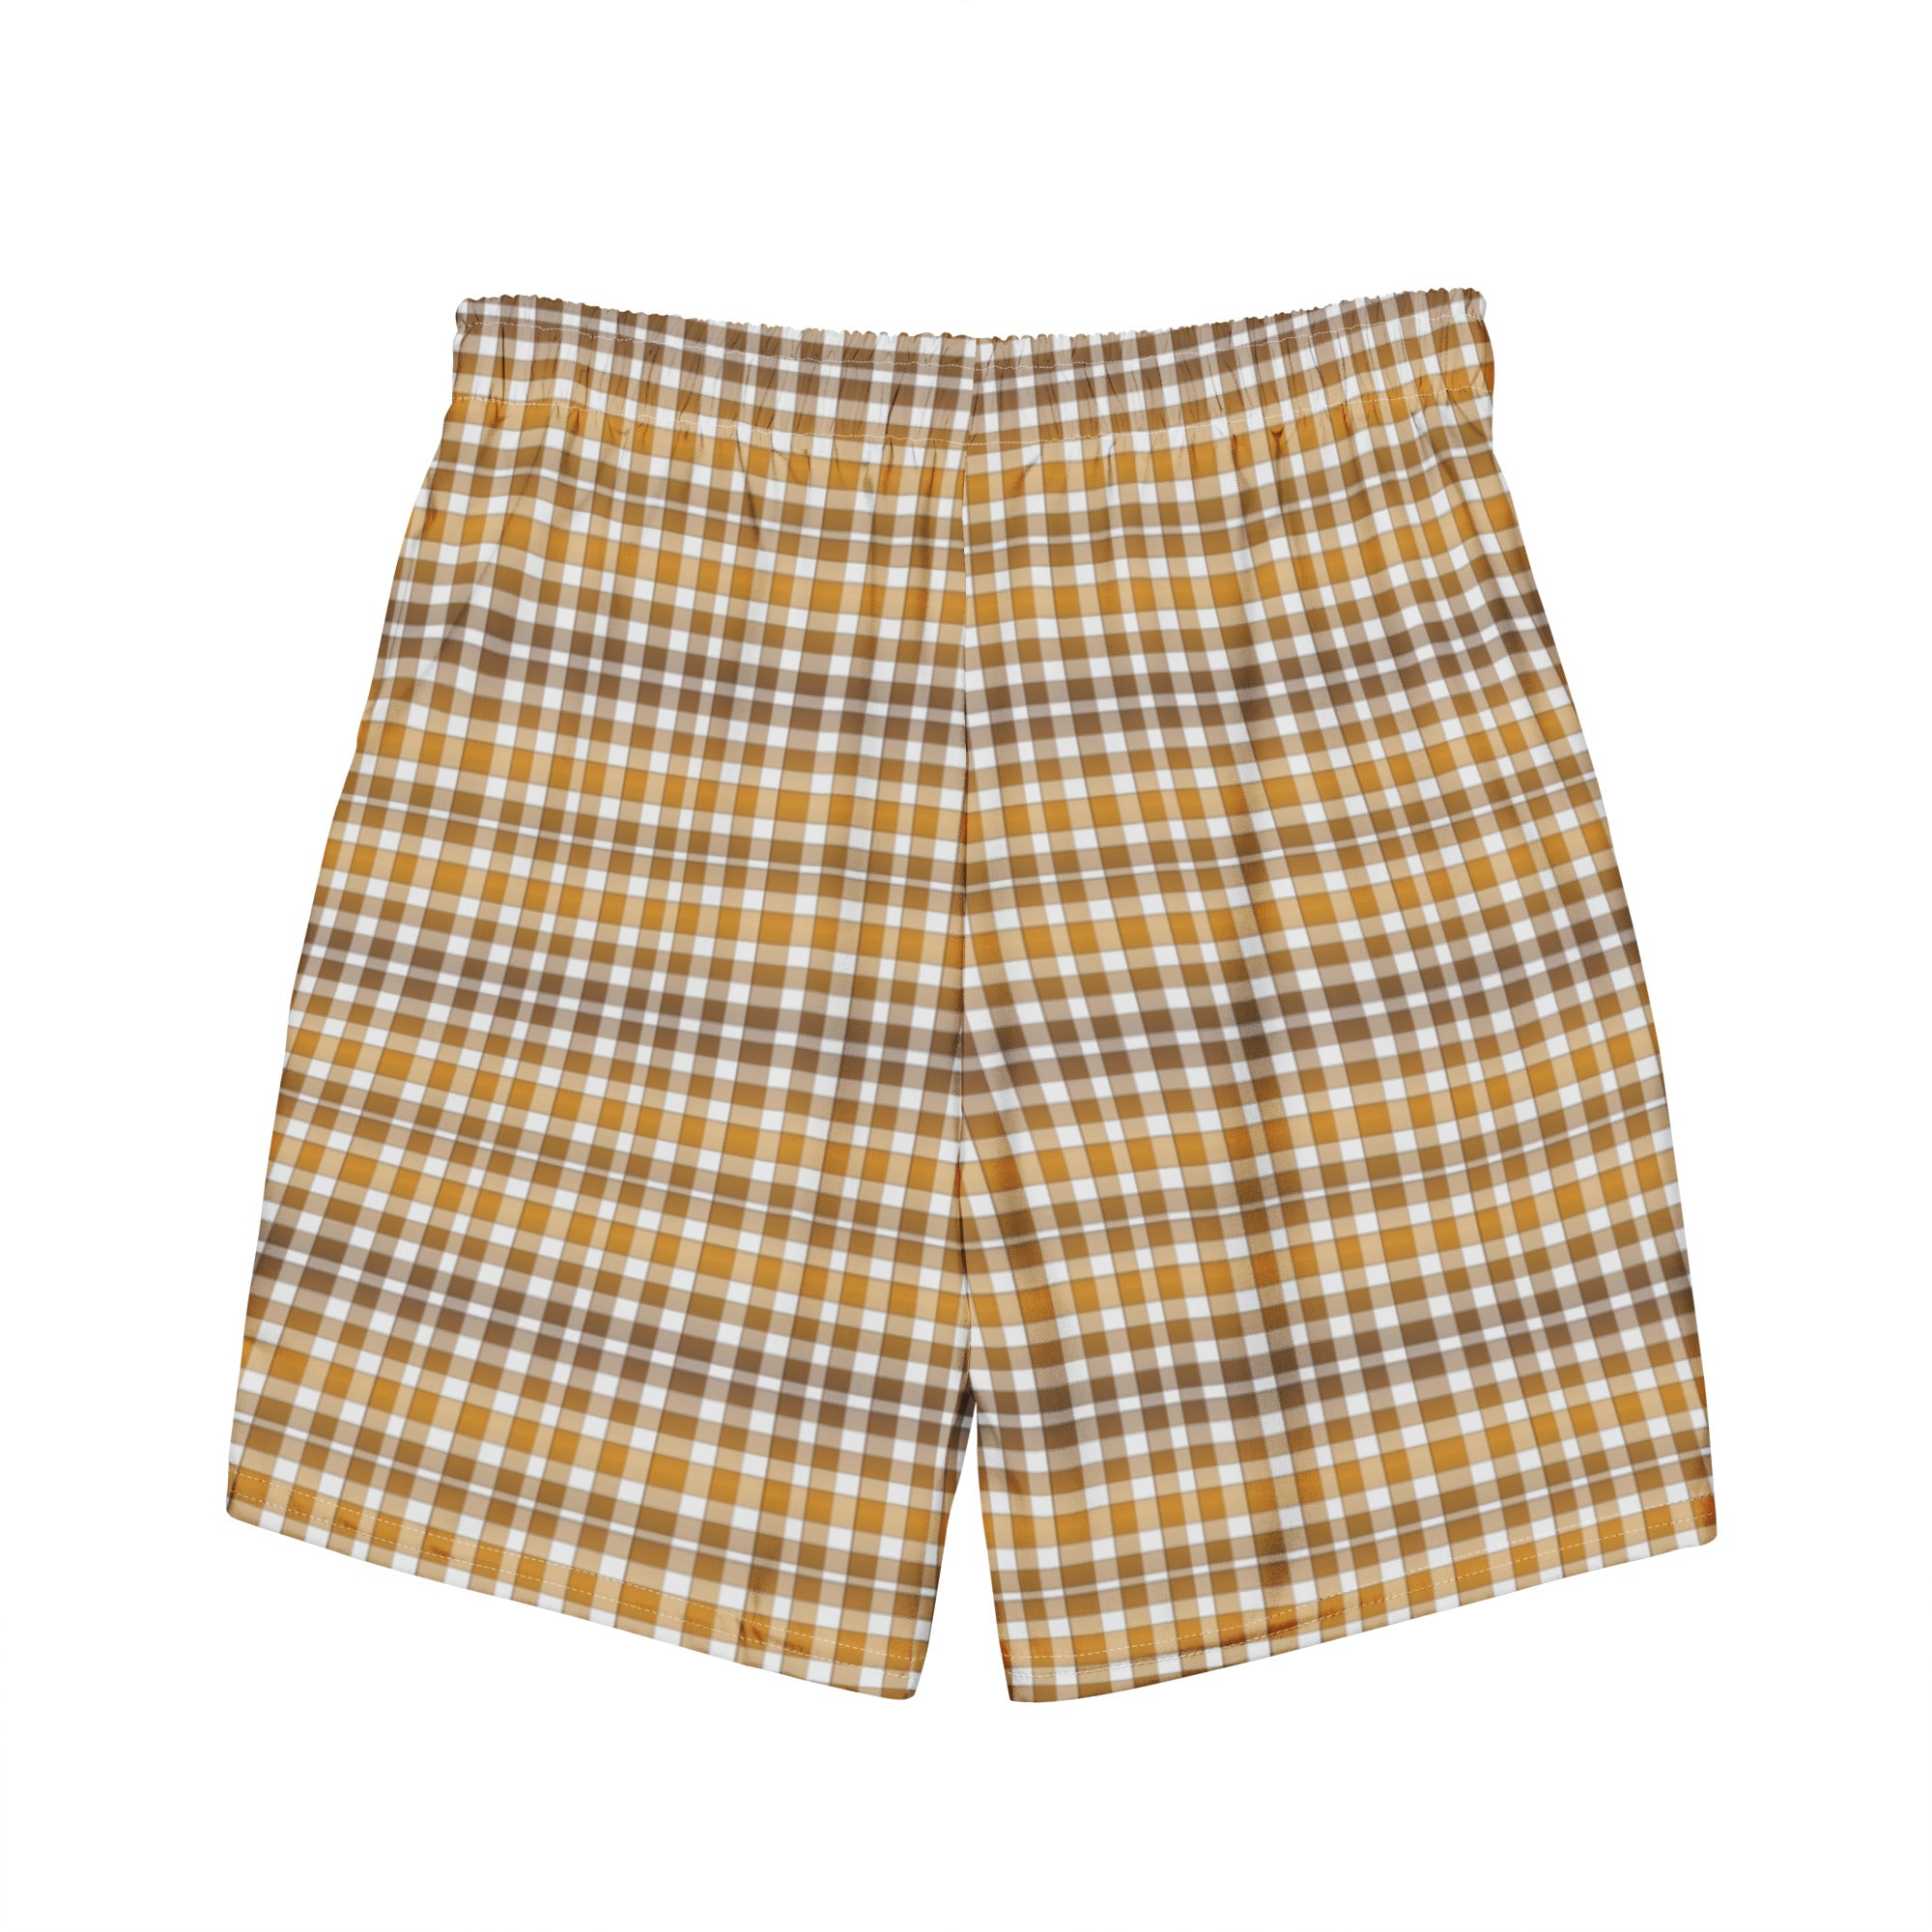 Check print pattern swimming trunks for men